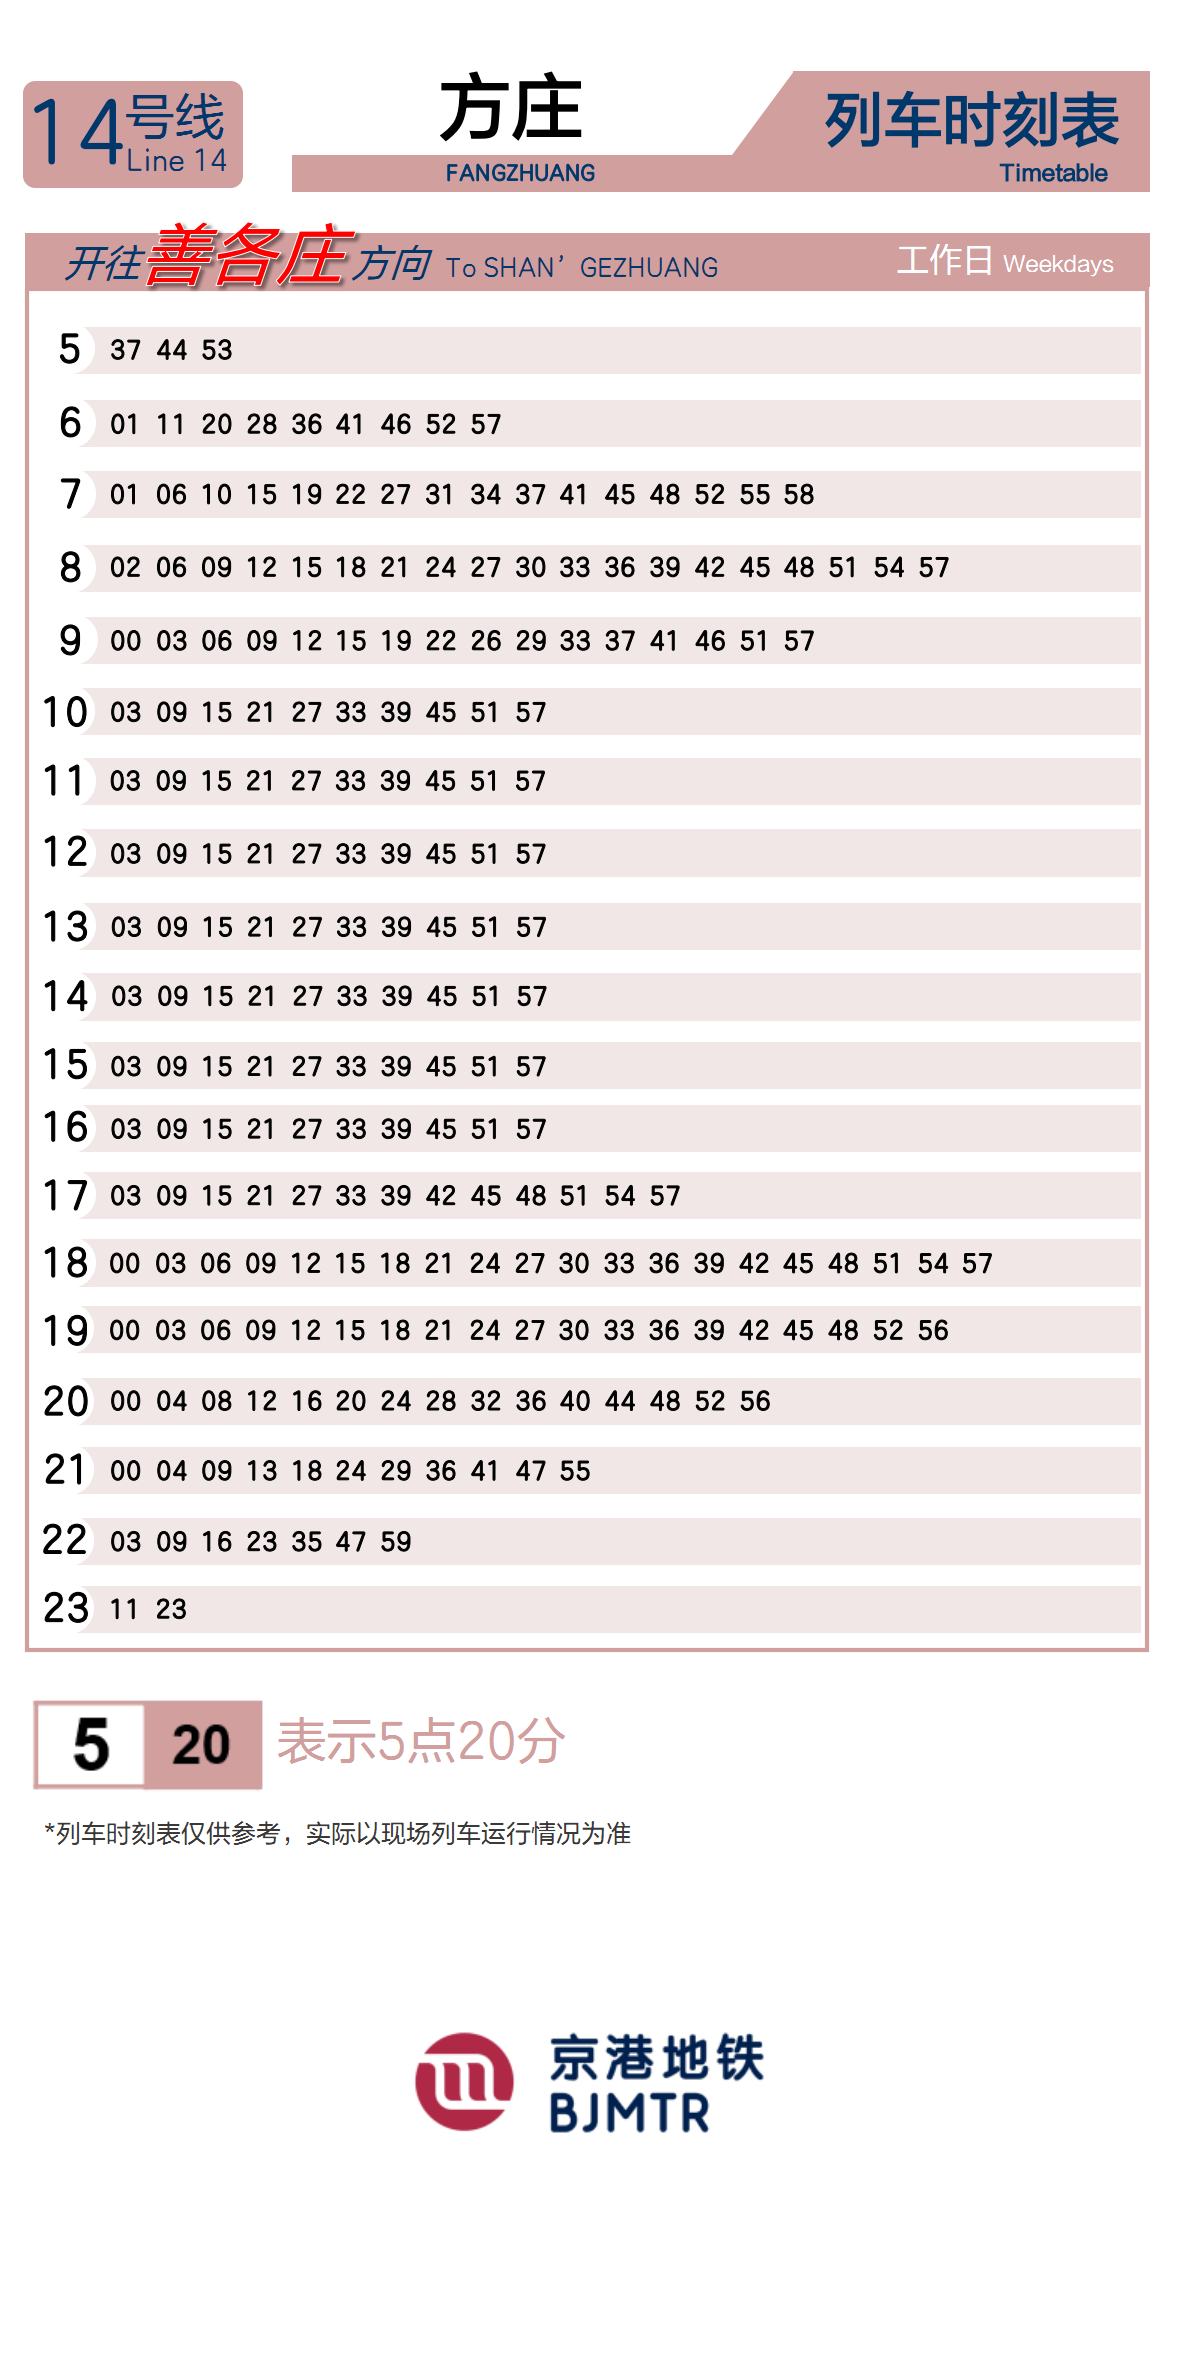 Line 14Fangzhuang时刻表